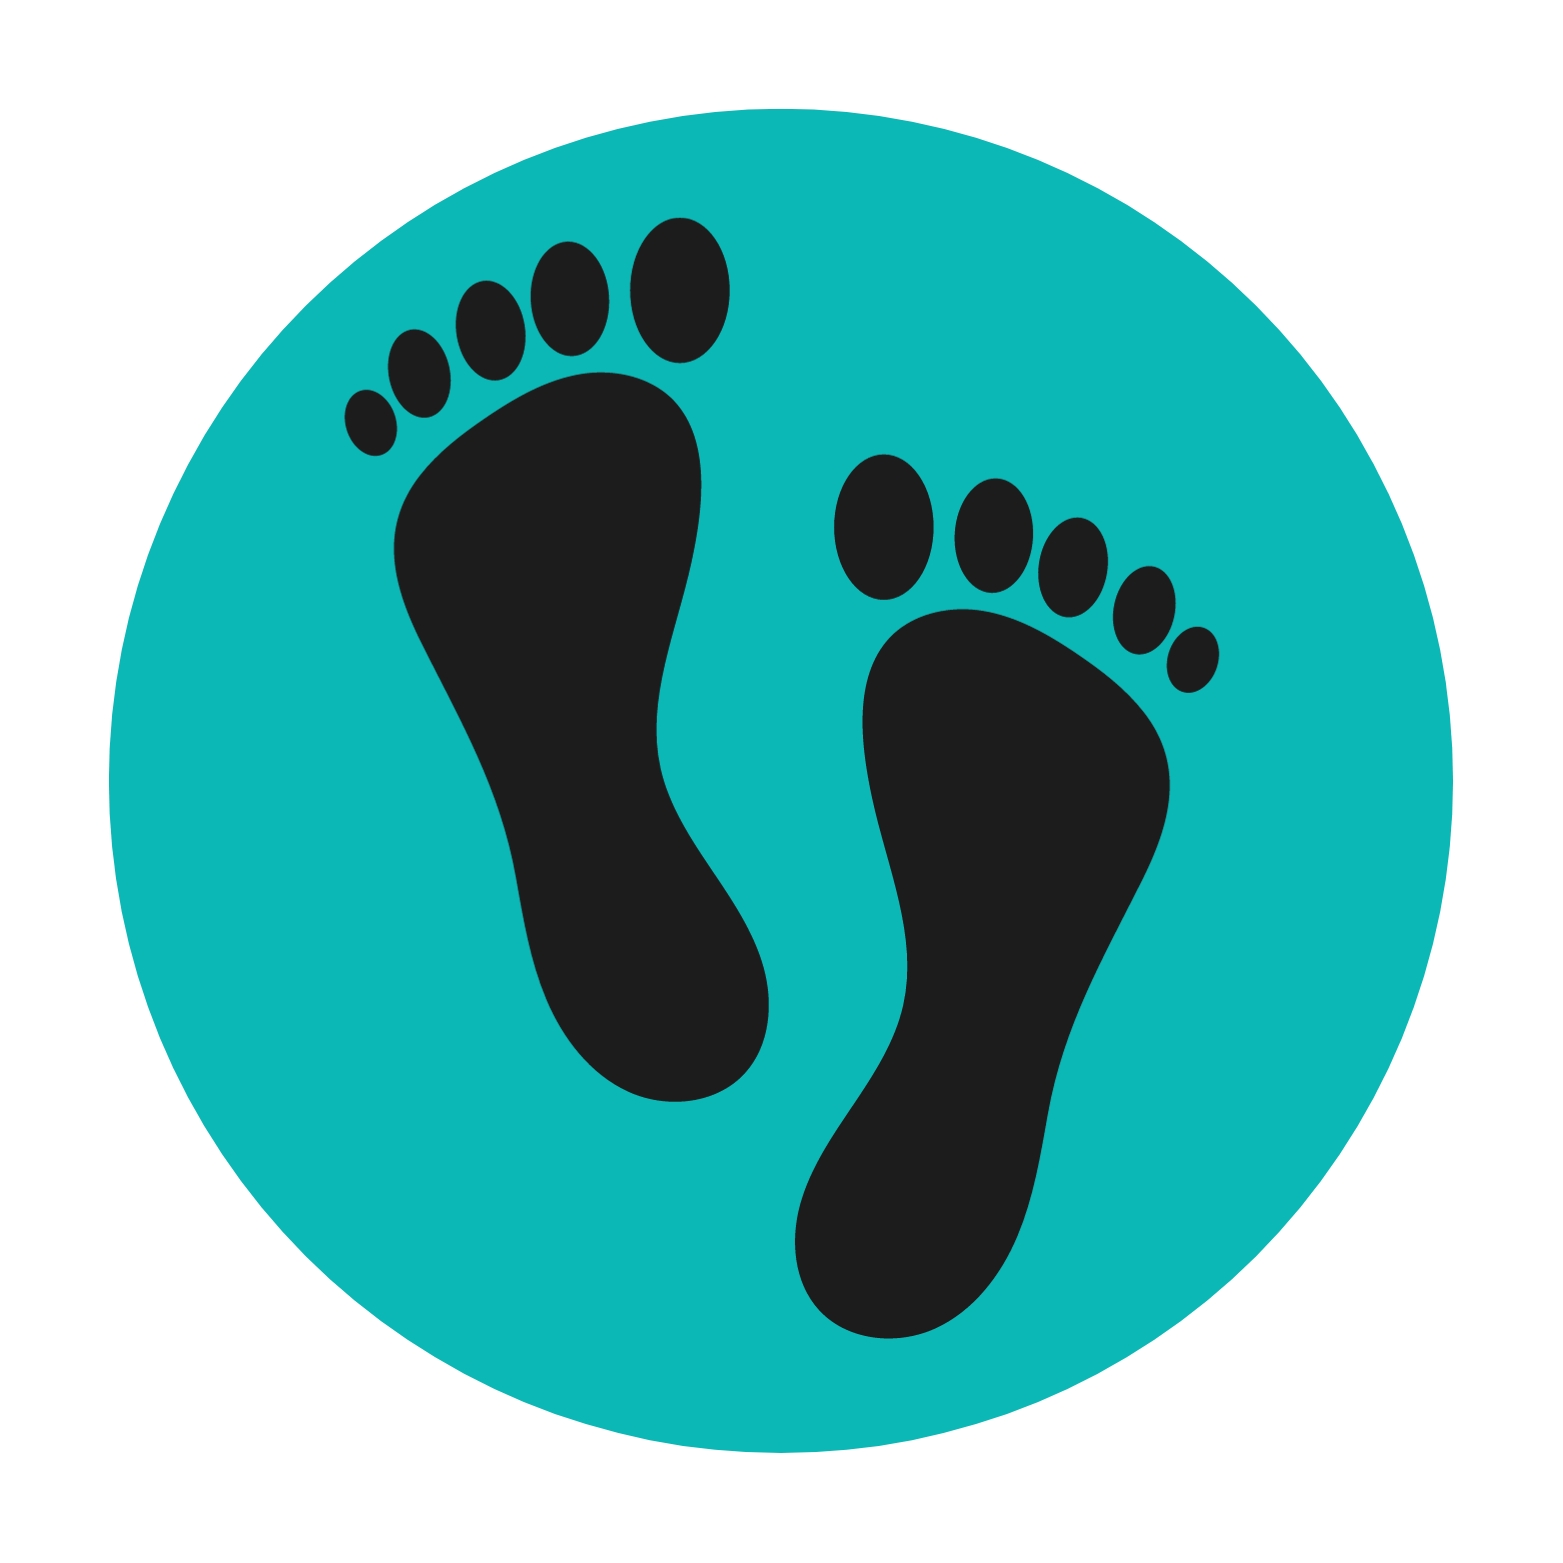 Foot Care immense diabetes & thyriod clinics